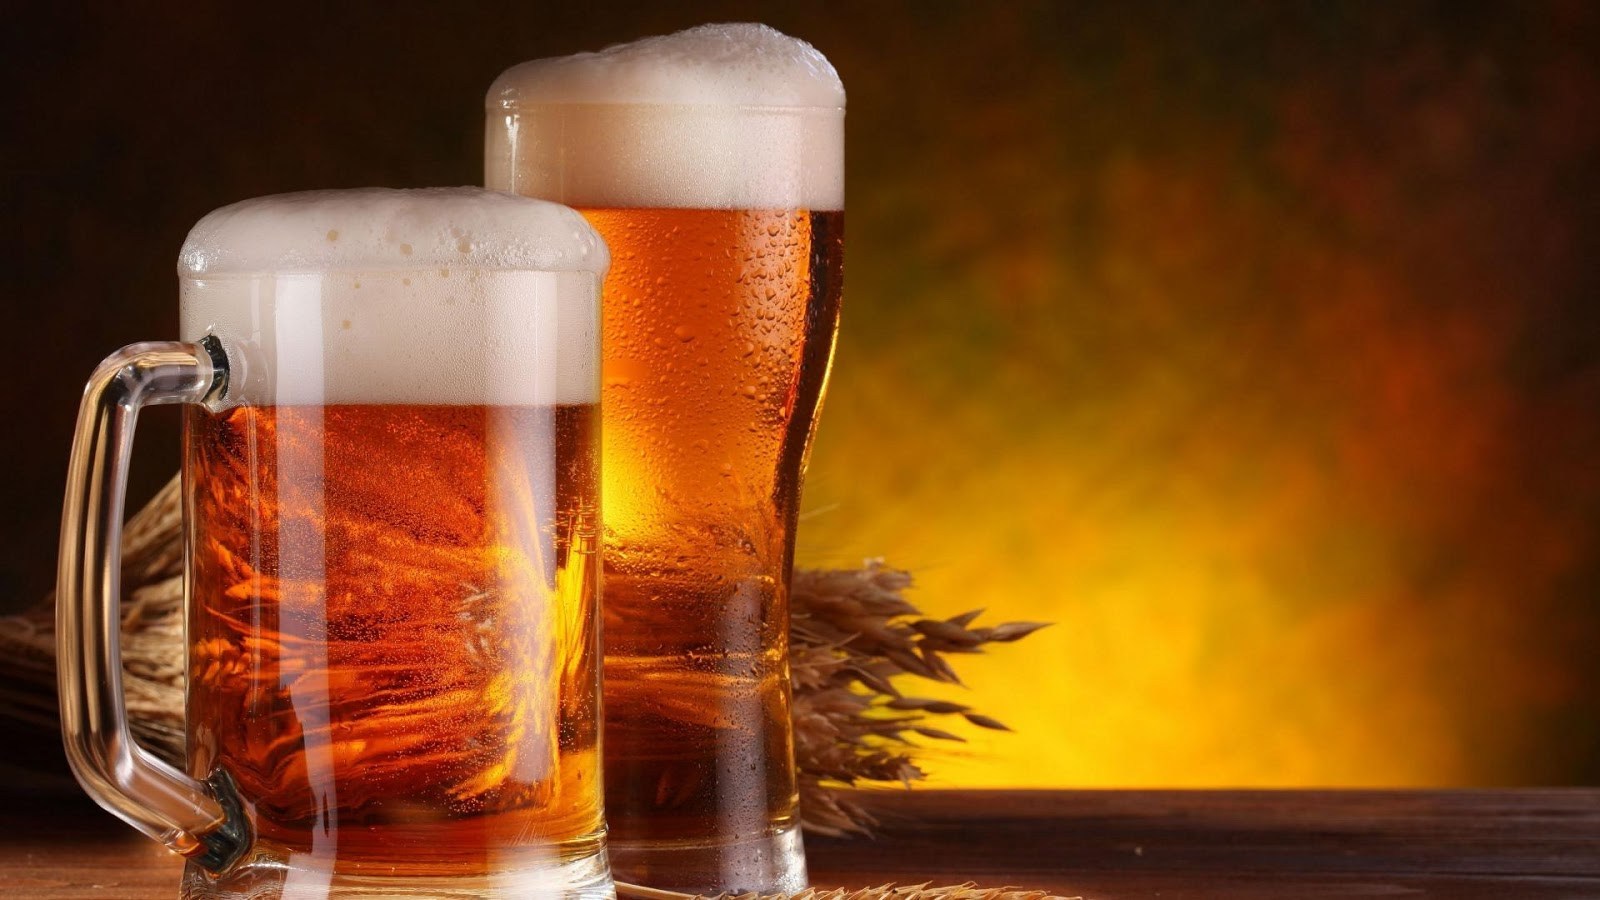 Η άγνωστη μπίρα με τις μεγαλύτερες πωλήσεις στον κόσμο (βίντεο)